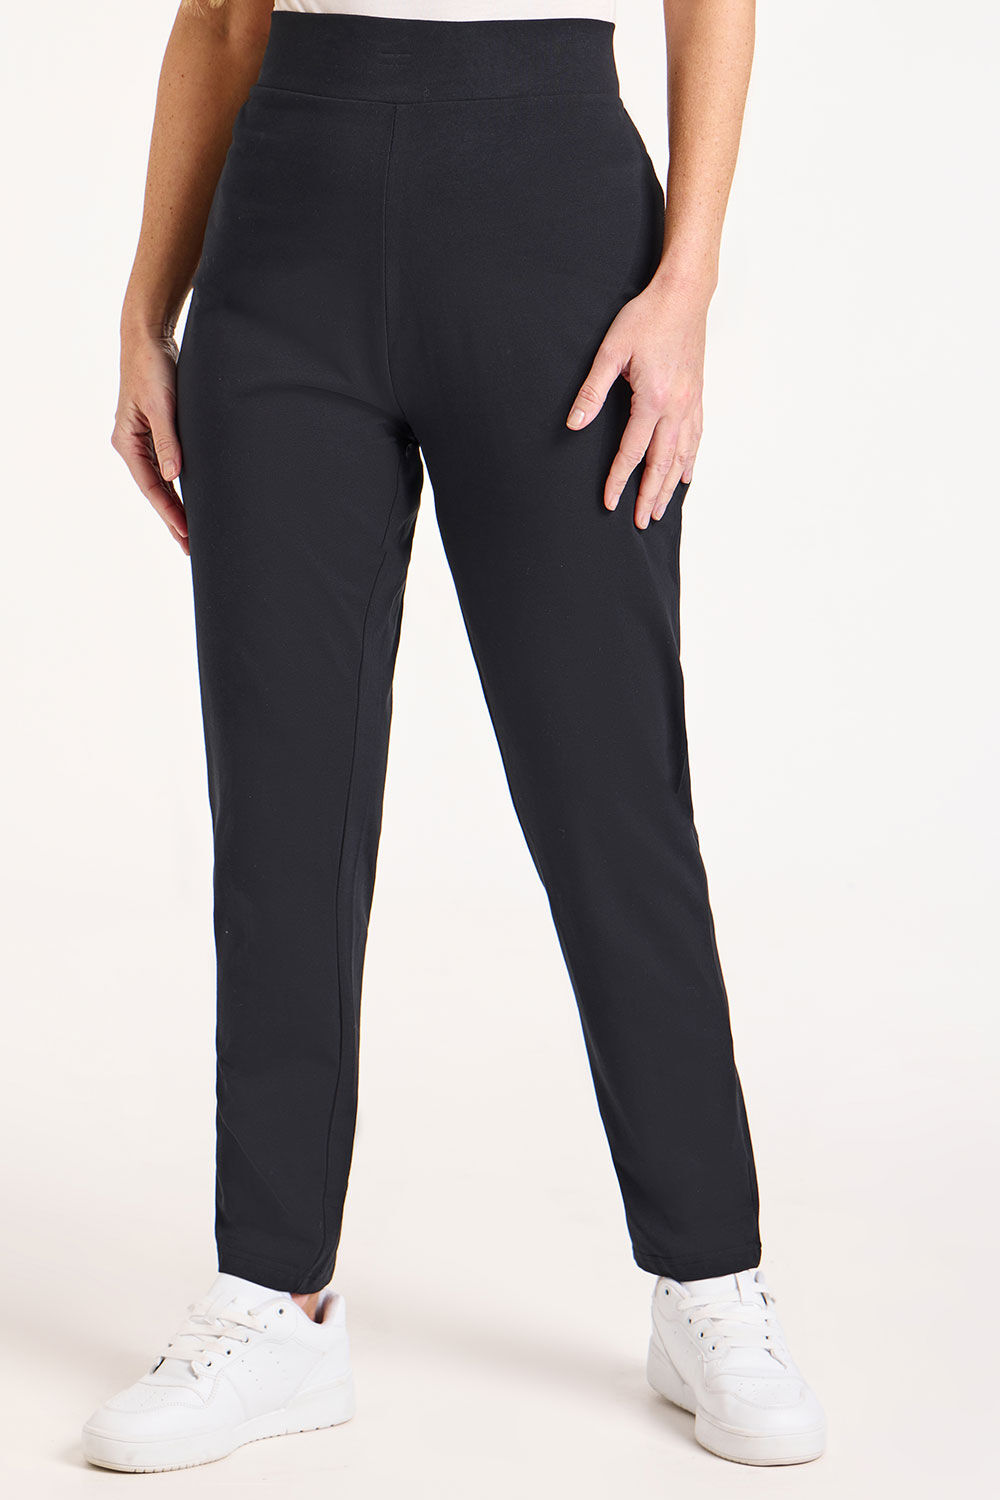 Bonmarche Short Yoga Pants - Black - Size 12